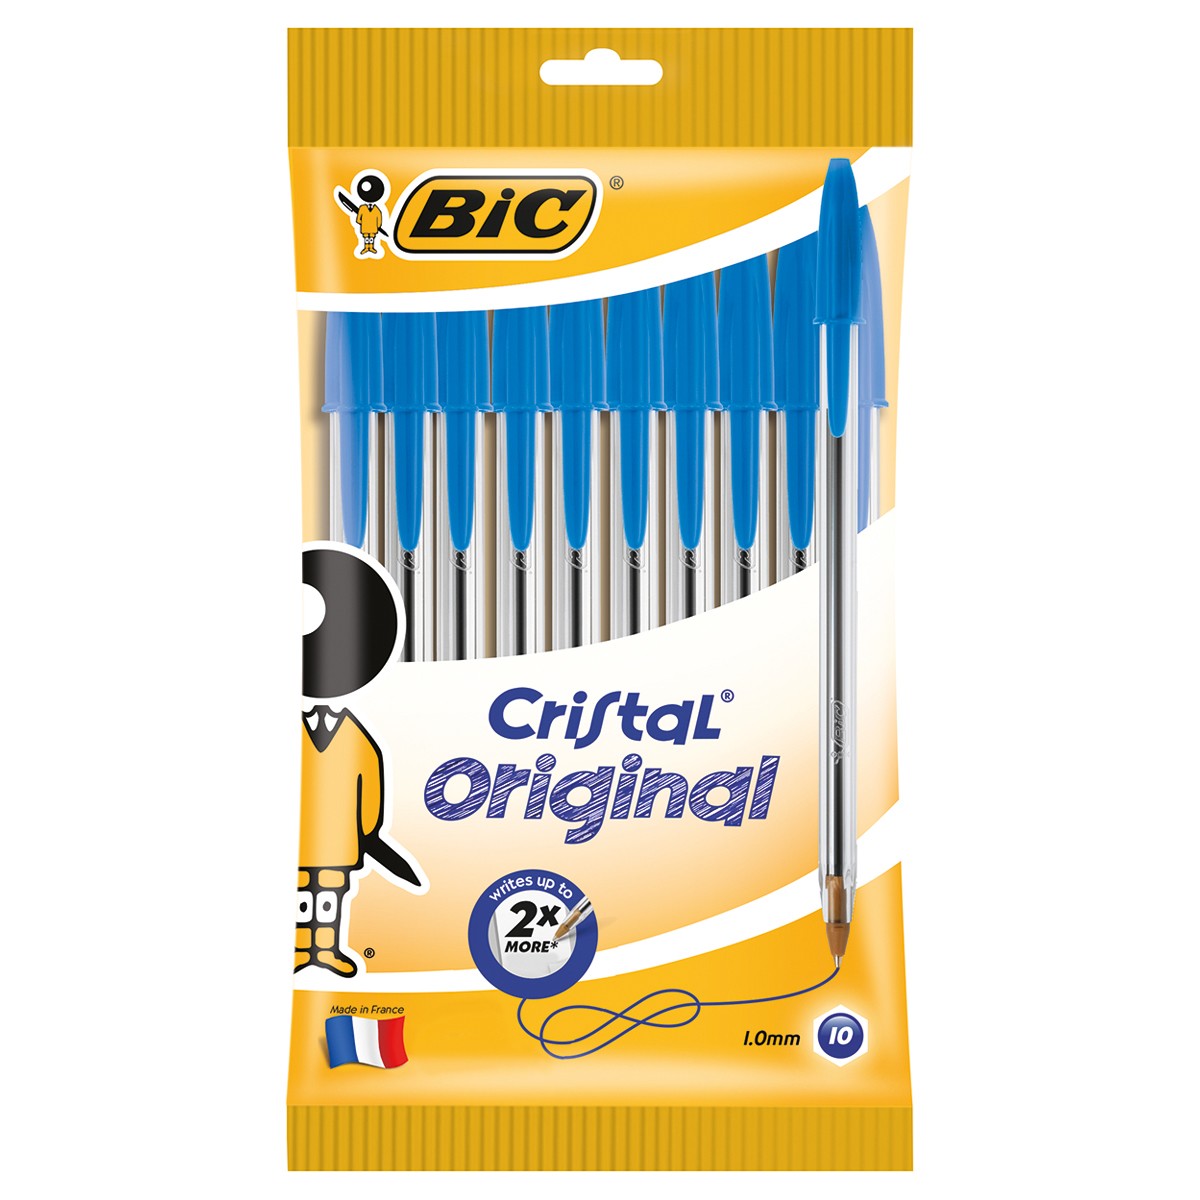 Bic Original Pens 10pk